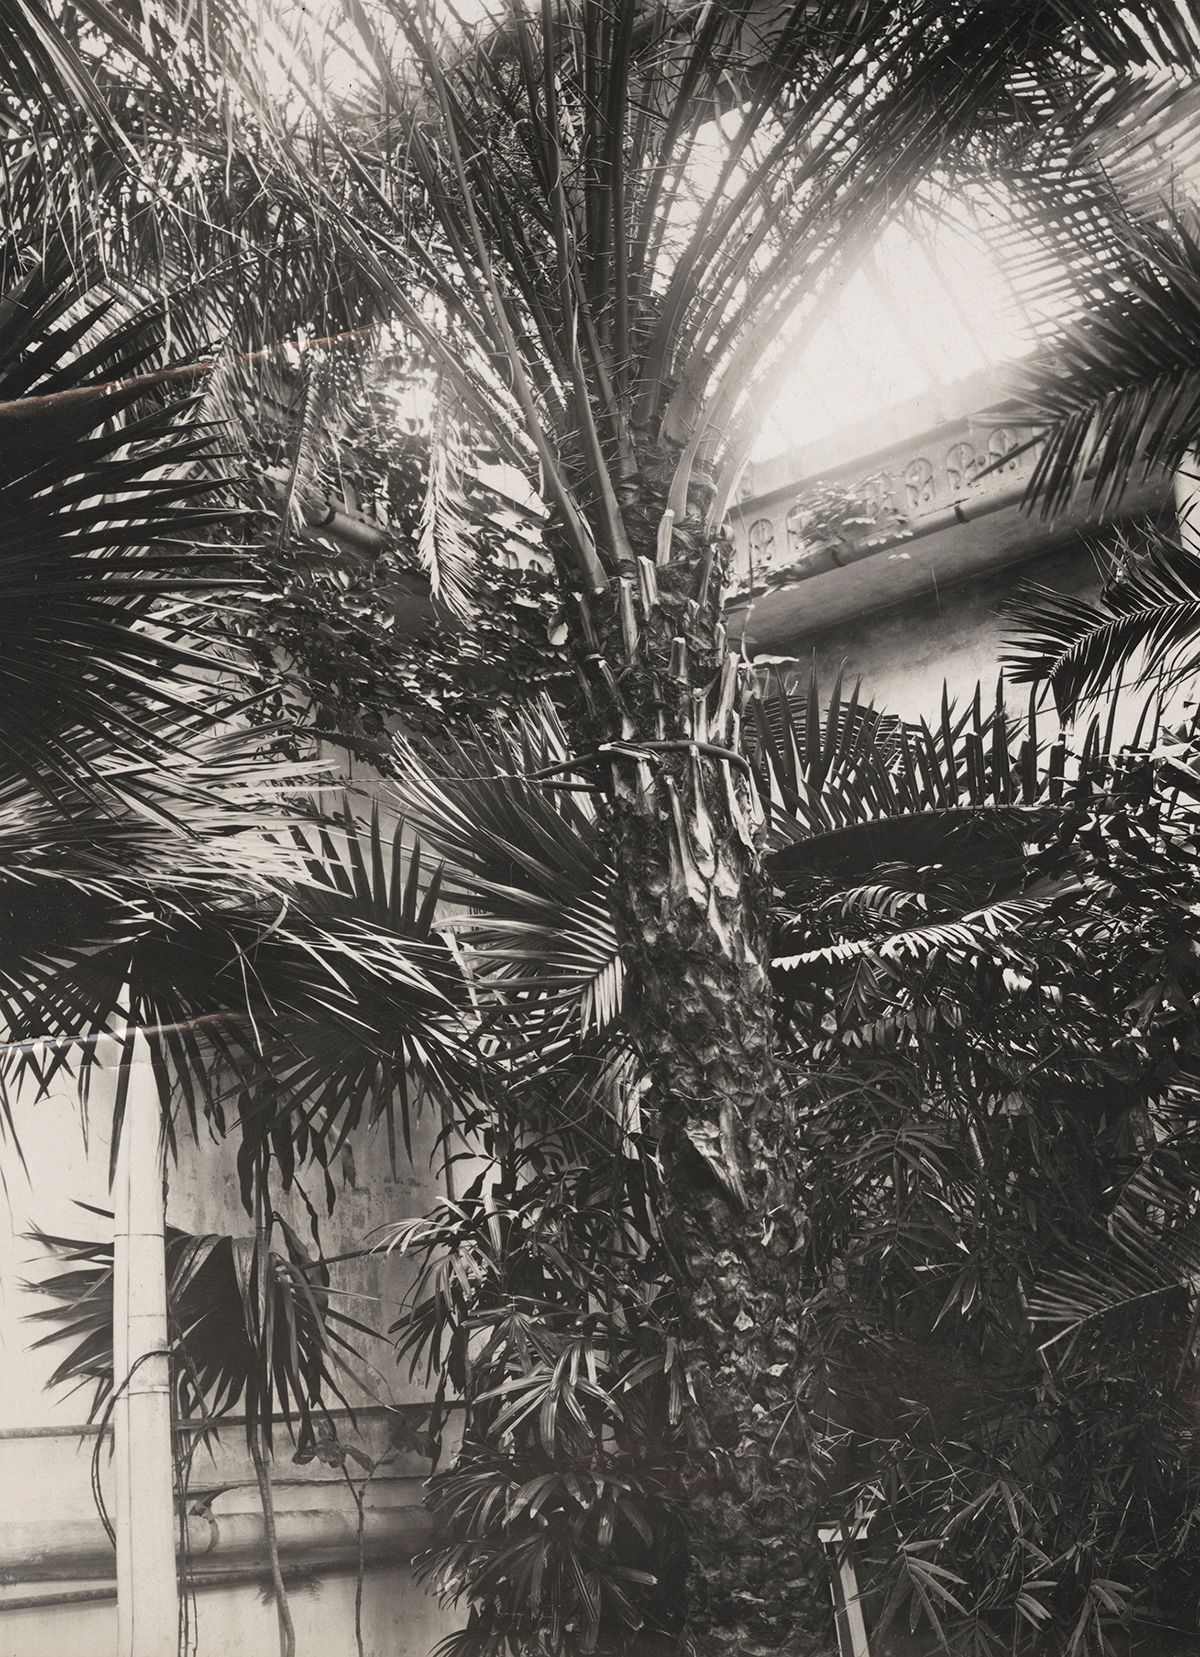 Palmehusets mest berømte vekst er Smiths palme, en kanaridaddelpalme (Phonix canariensis), alet opp fra et frø botanikeren og bestyreren sendte hjem i 1815. Taket har måttet blitt forhøyet i takt med palmens vekstvilje. Eventyret tar slutt i år 2000.&amp;#160;
Foto: Ukjent/MUV. 1934.